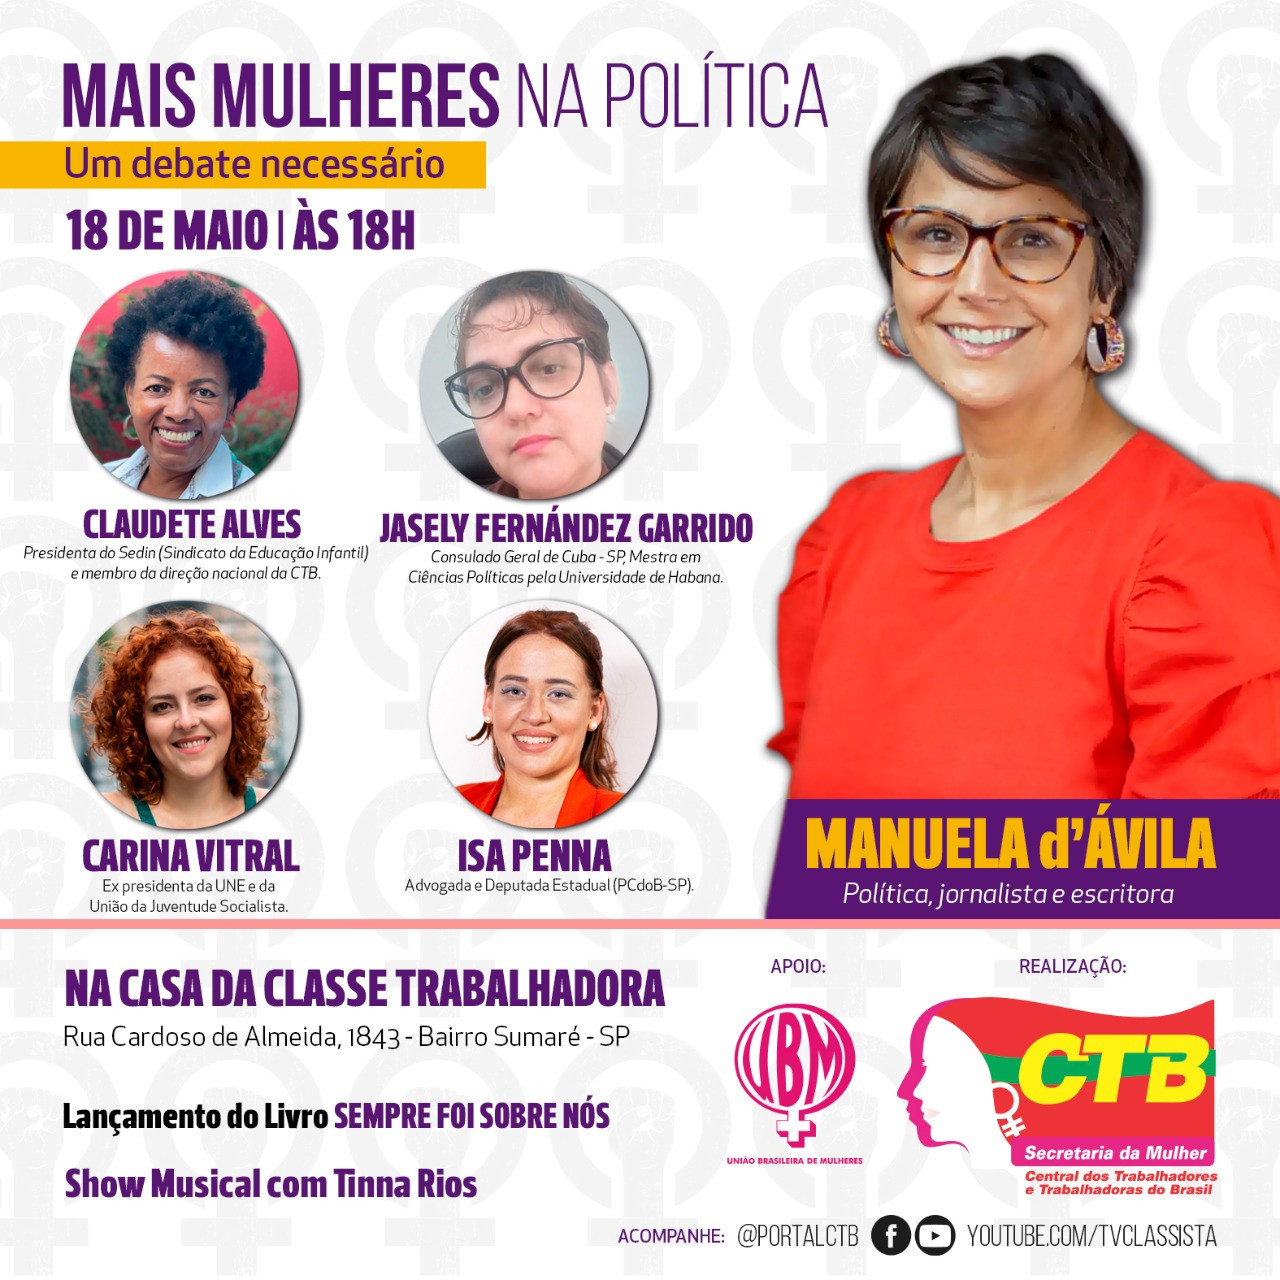 “Mais mulheres na política”, é o tema do debate que a CTB promove no próximo dia 18